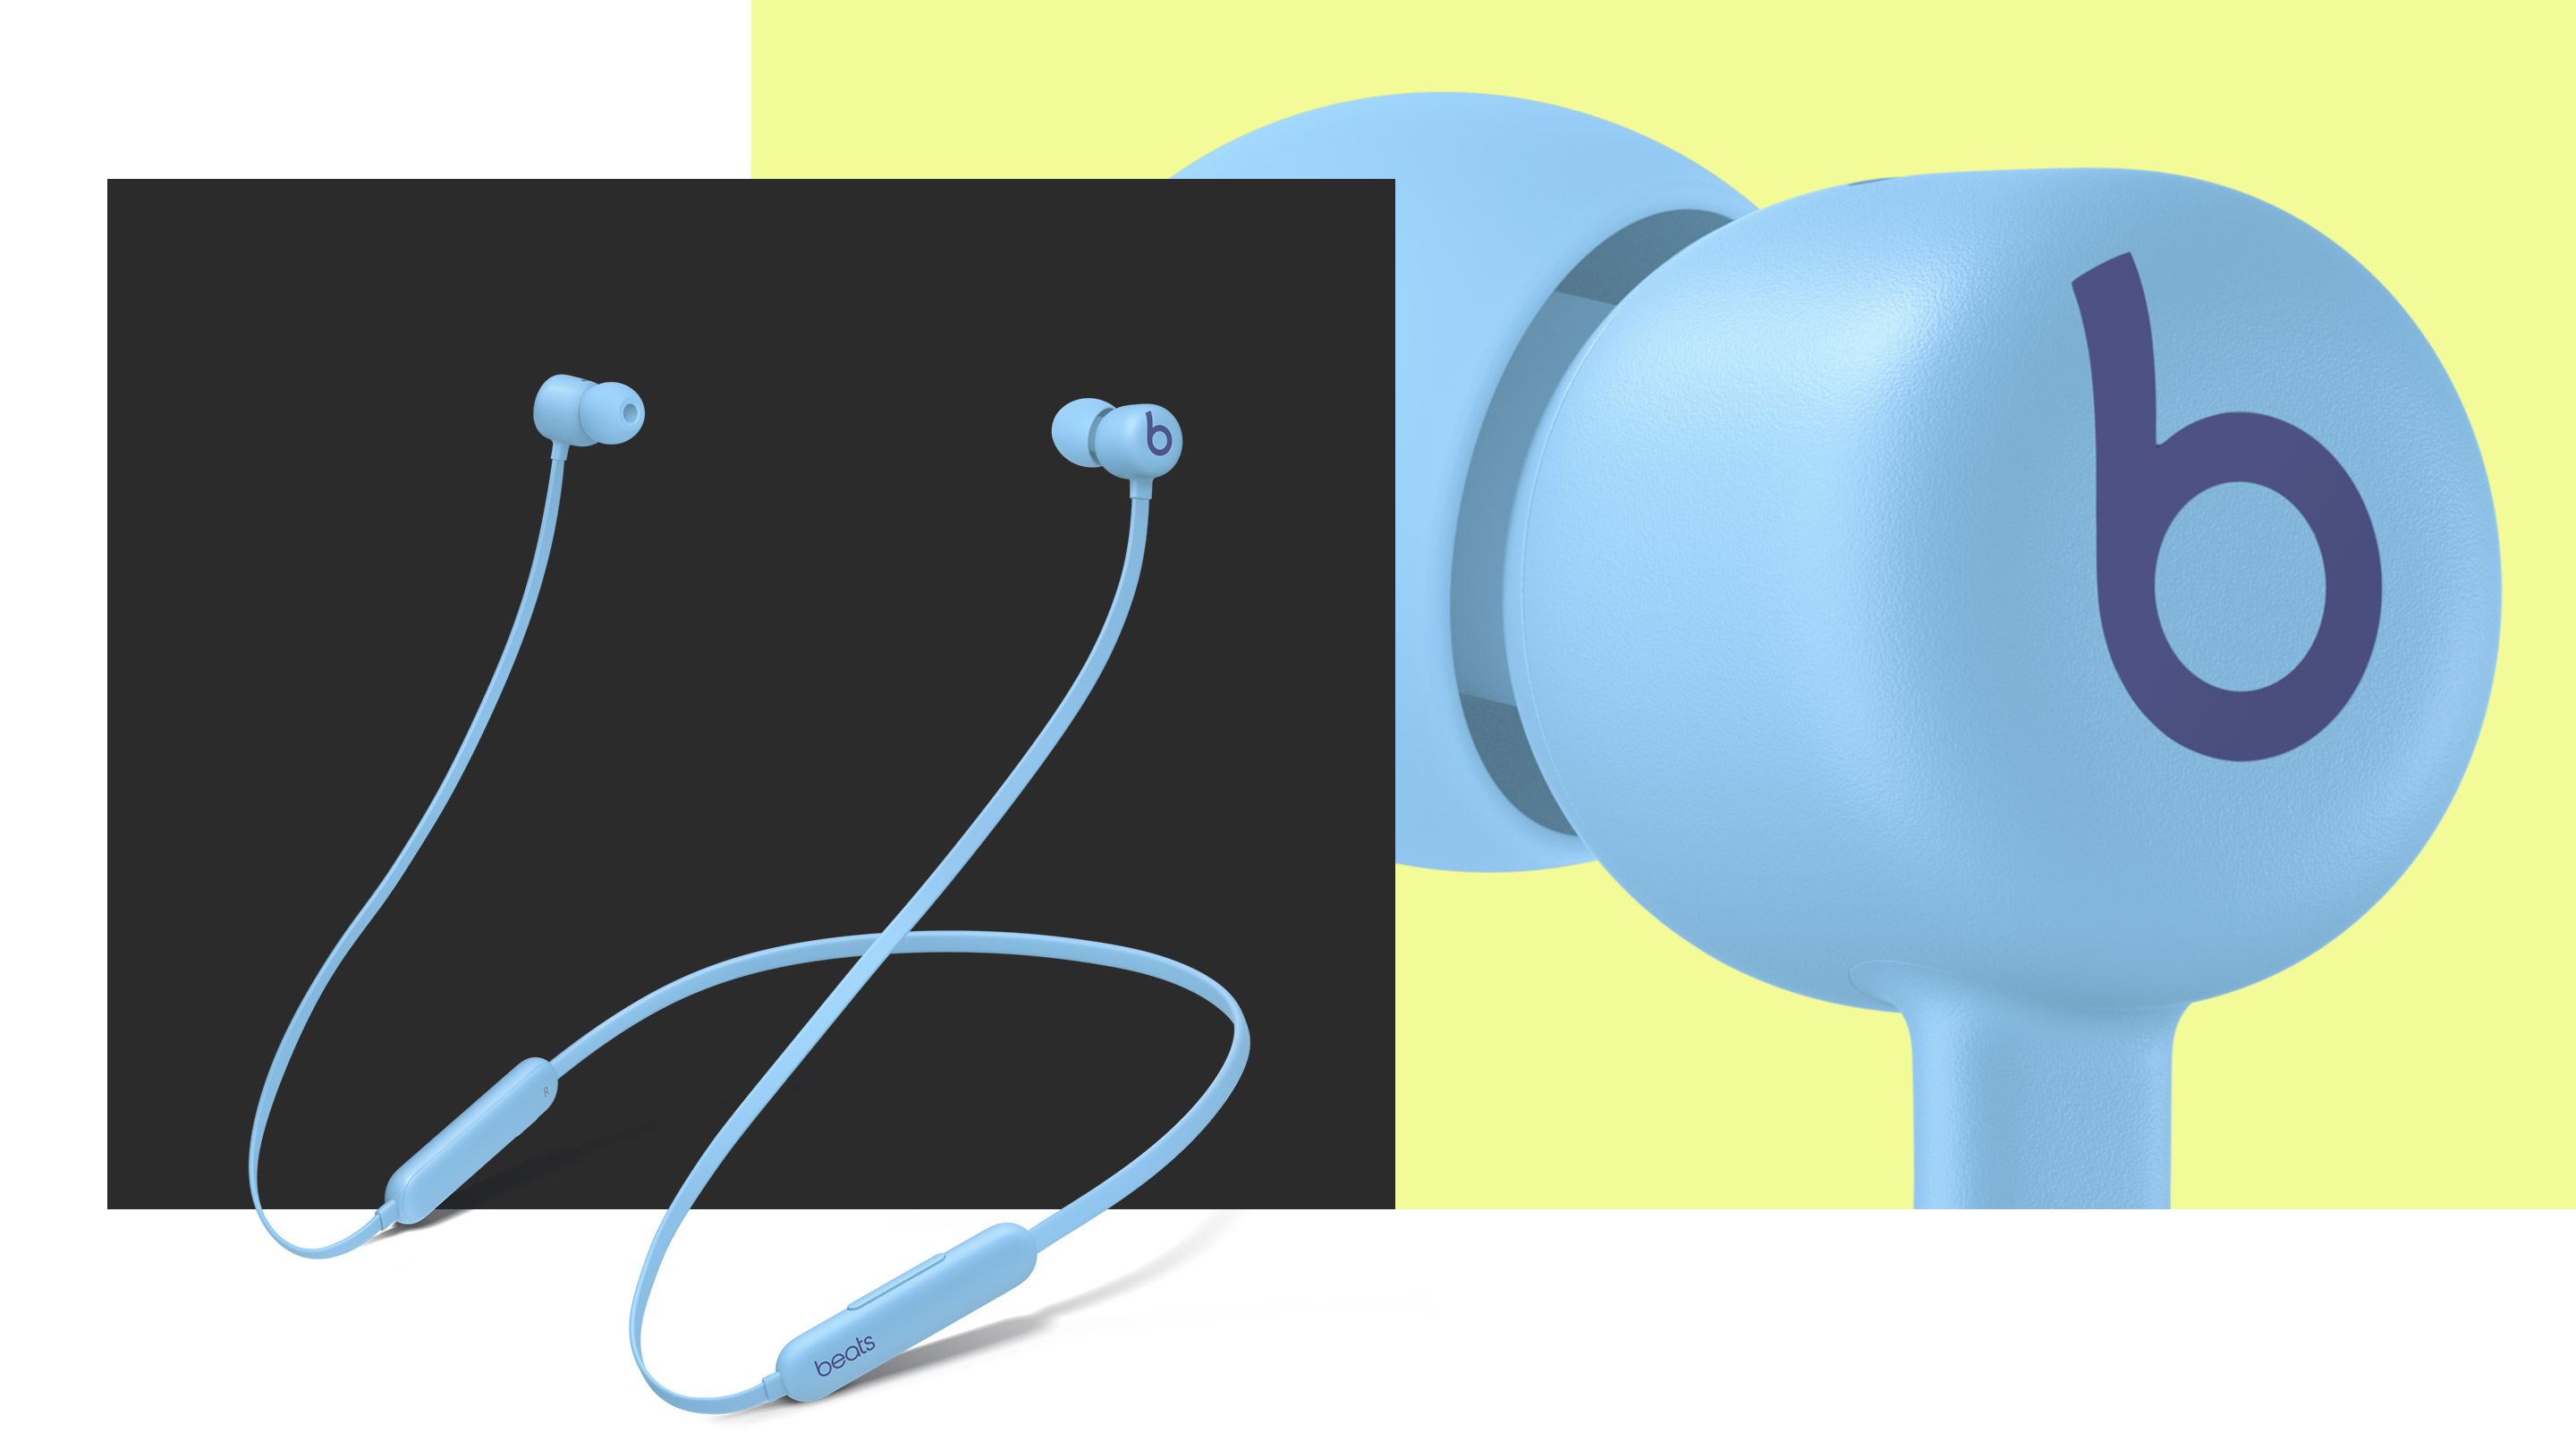 Beats Flex – All-Day Wireless Earphones - Smoke Gray - Apple